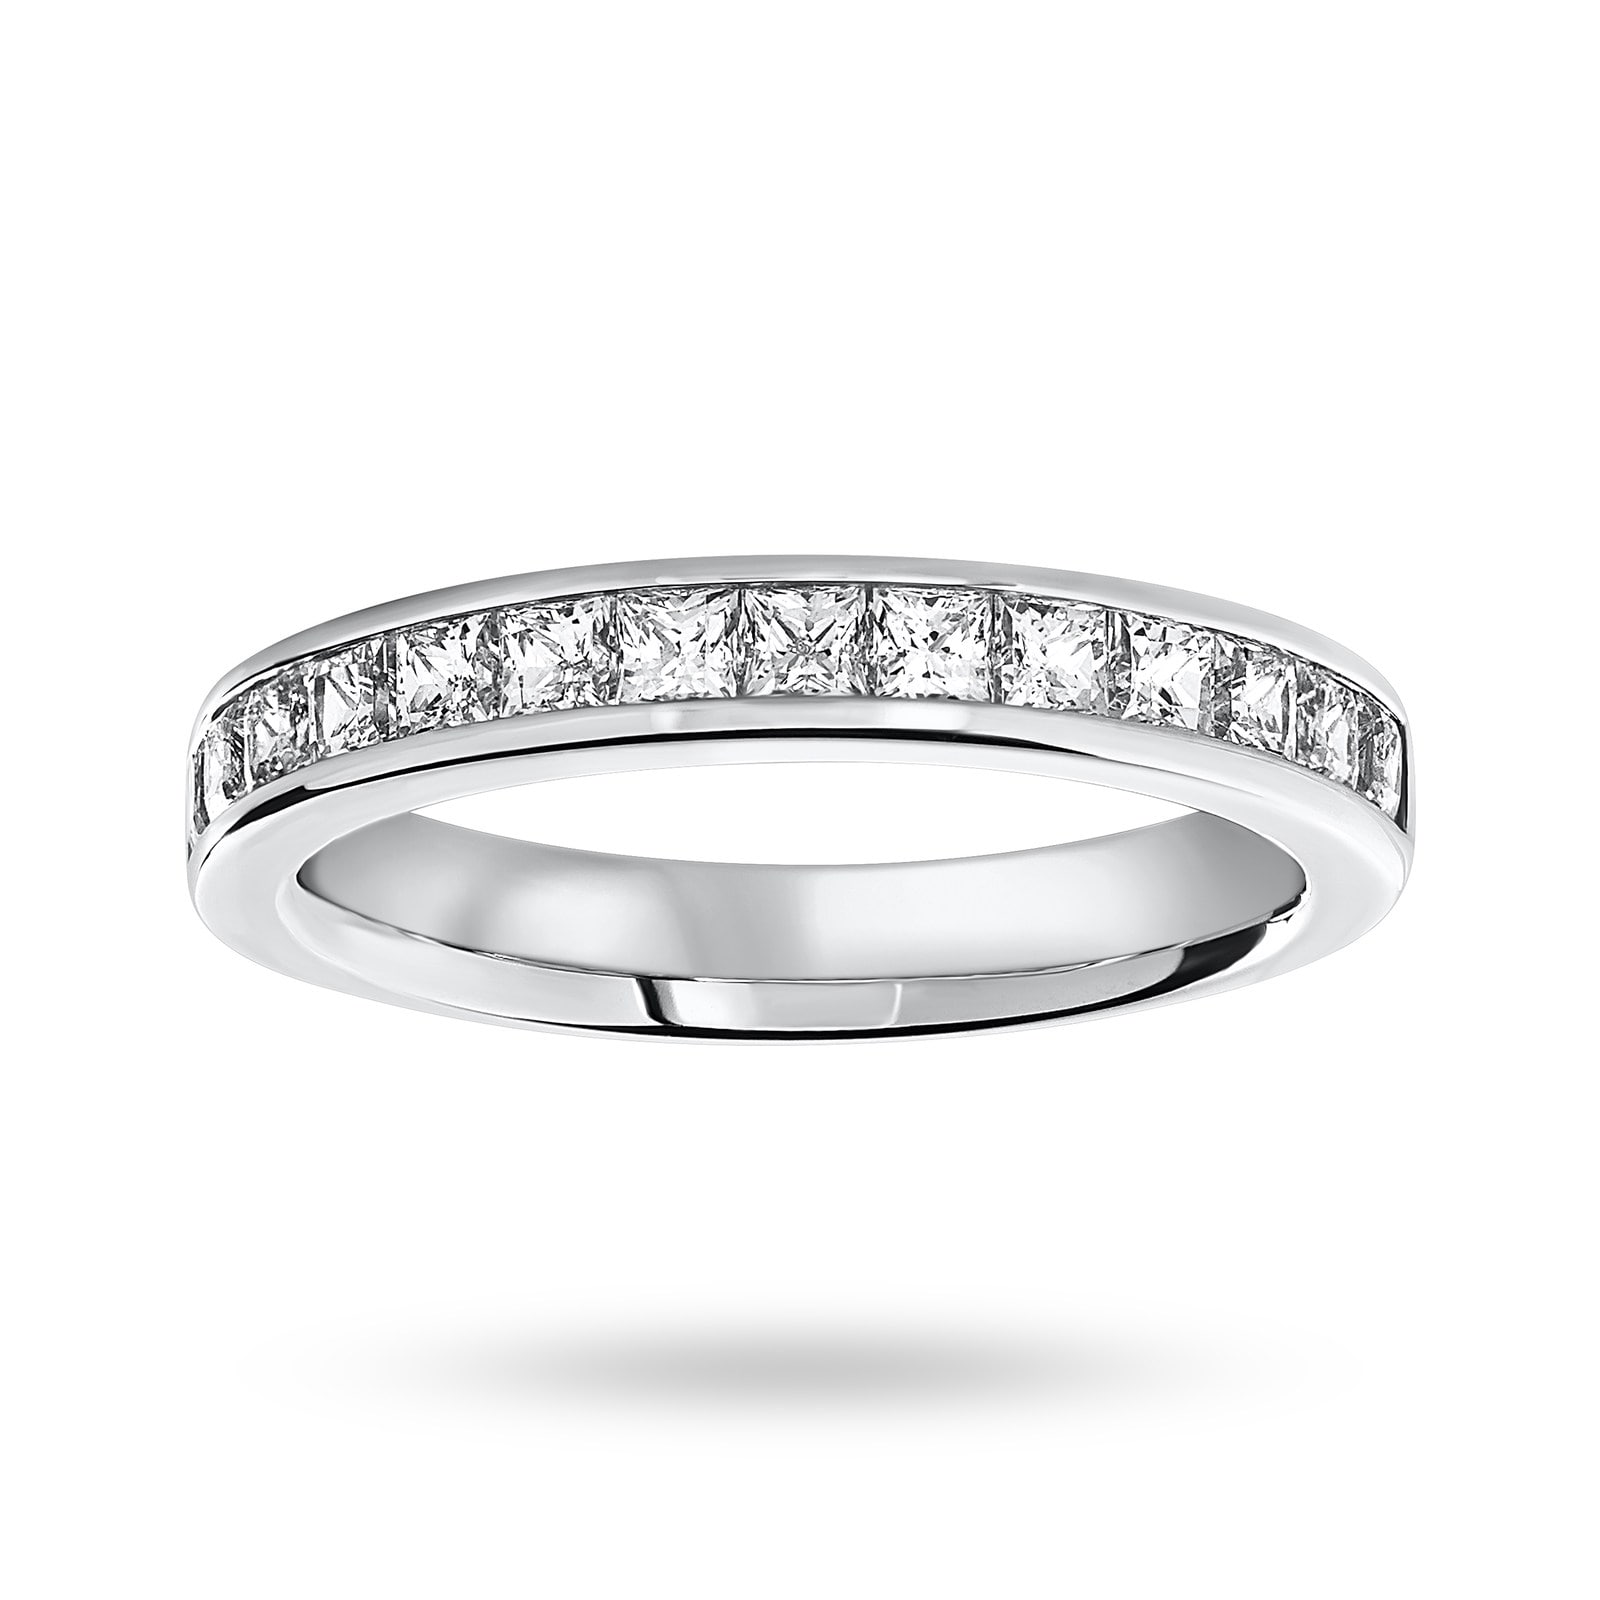 9 Carat White Gold 1.00 Carat Princess Cut Half Eternity Ring - Ring Size O